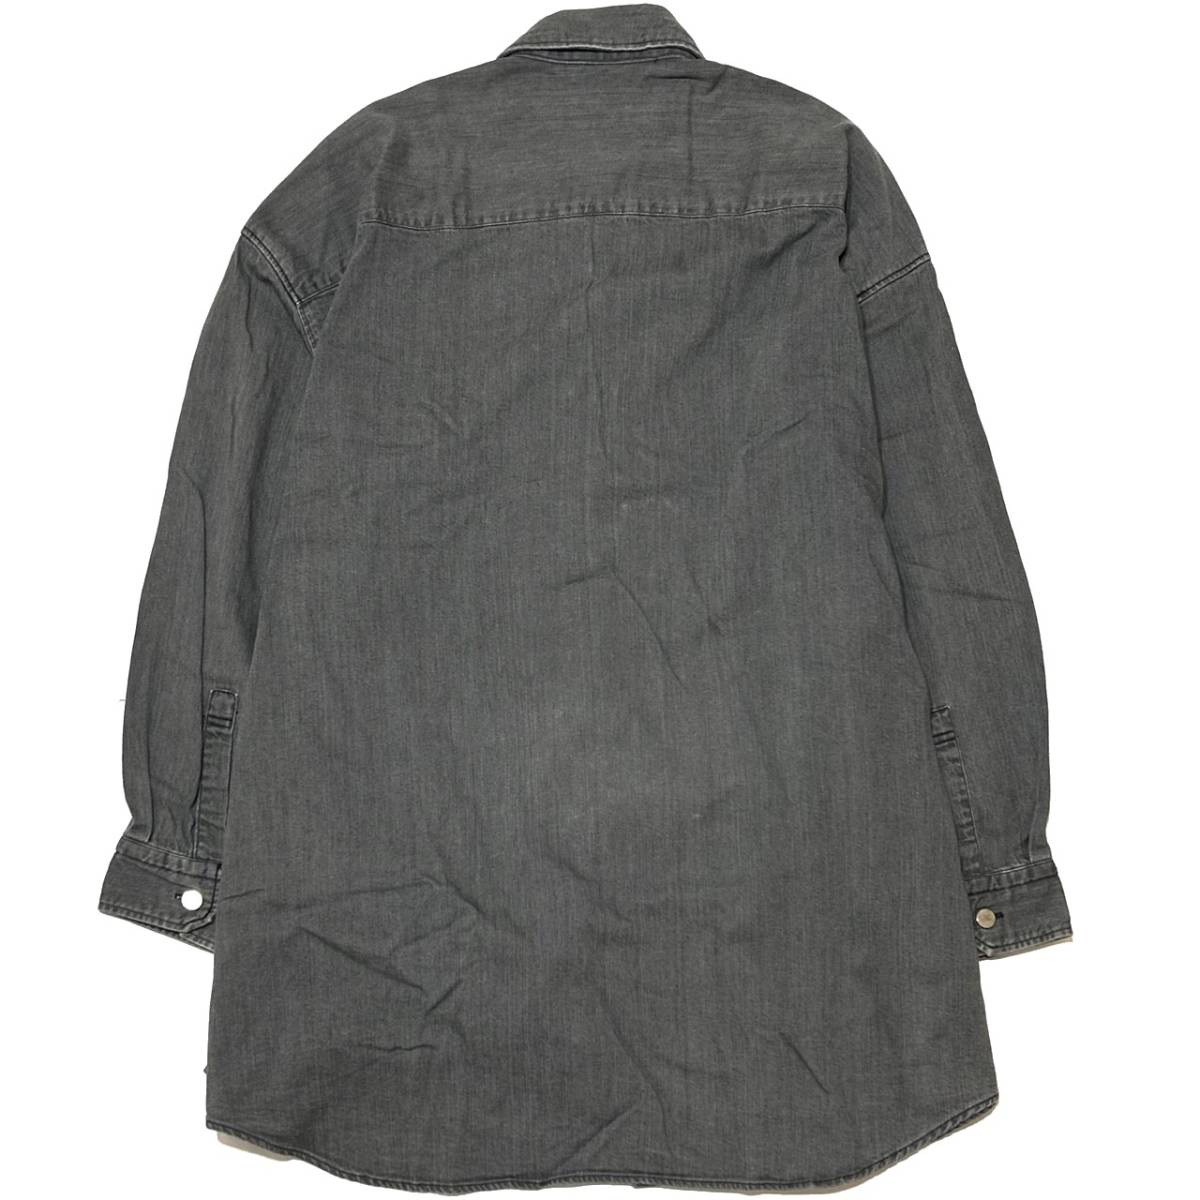 MB высокого уровня Denim рубашка пальто осветлитель L черный Attachment 